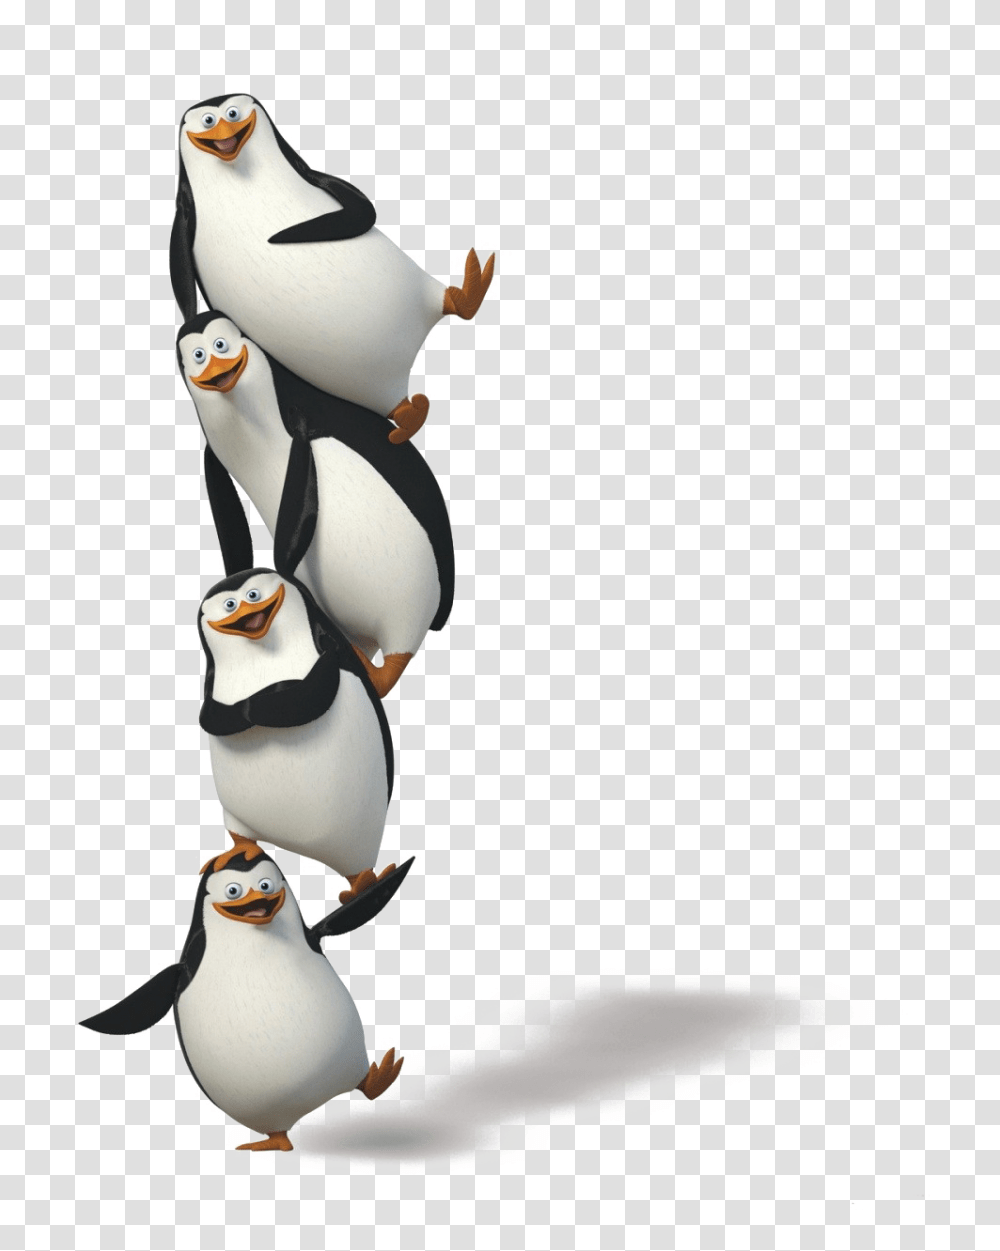 Pinguin, Animals, Penguin, Bird, Figurine Transparent Png